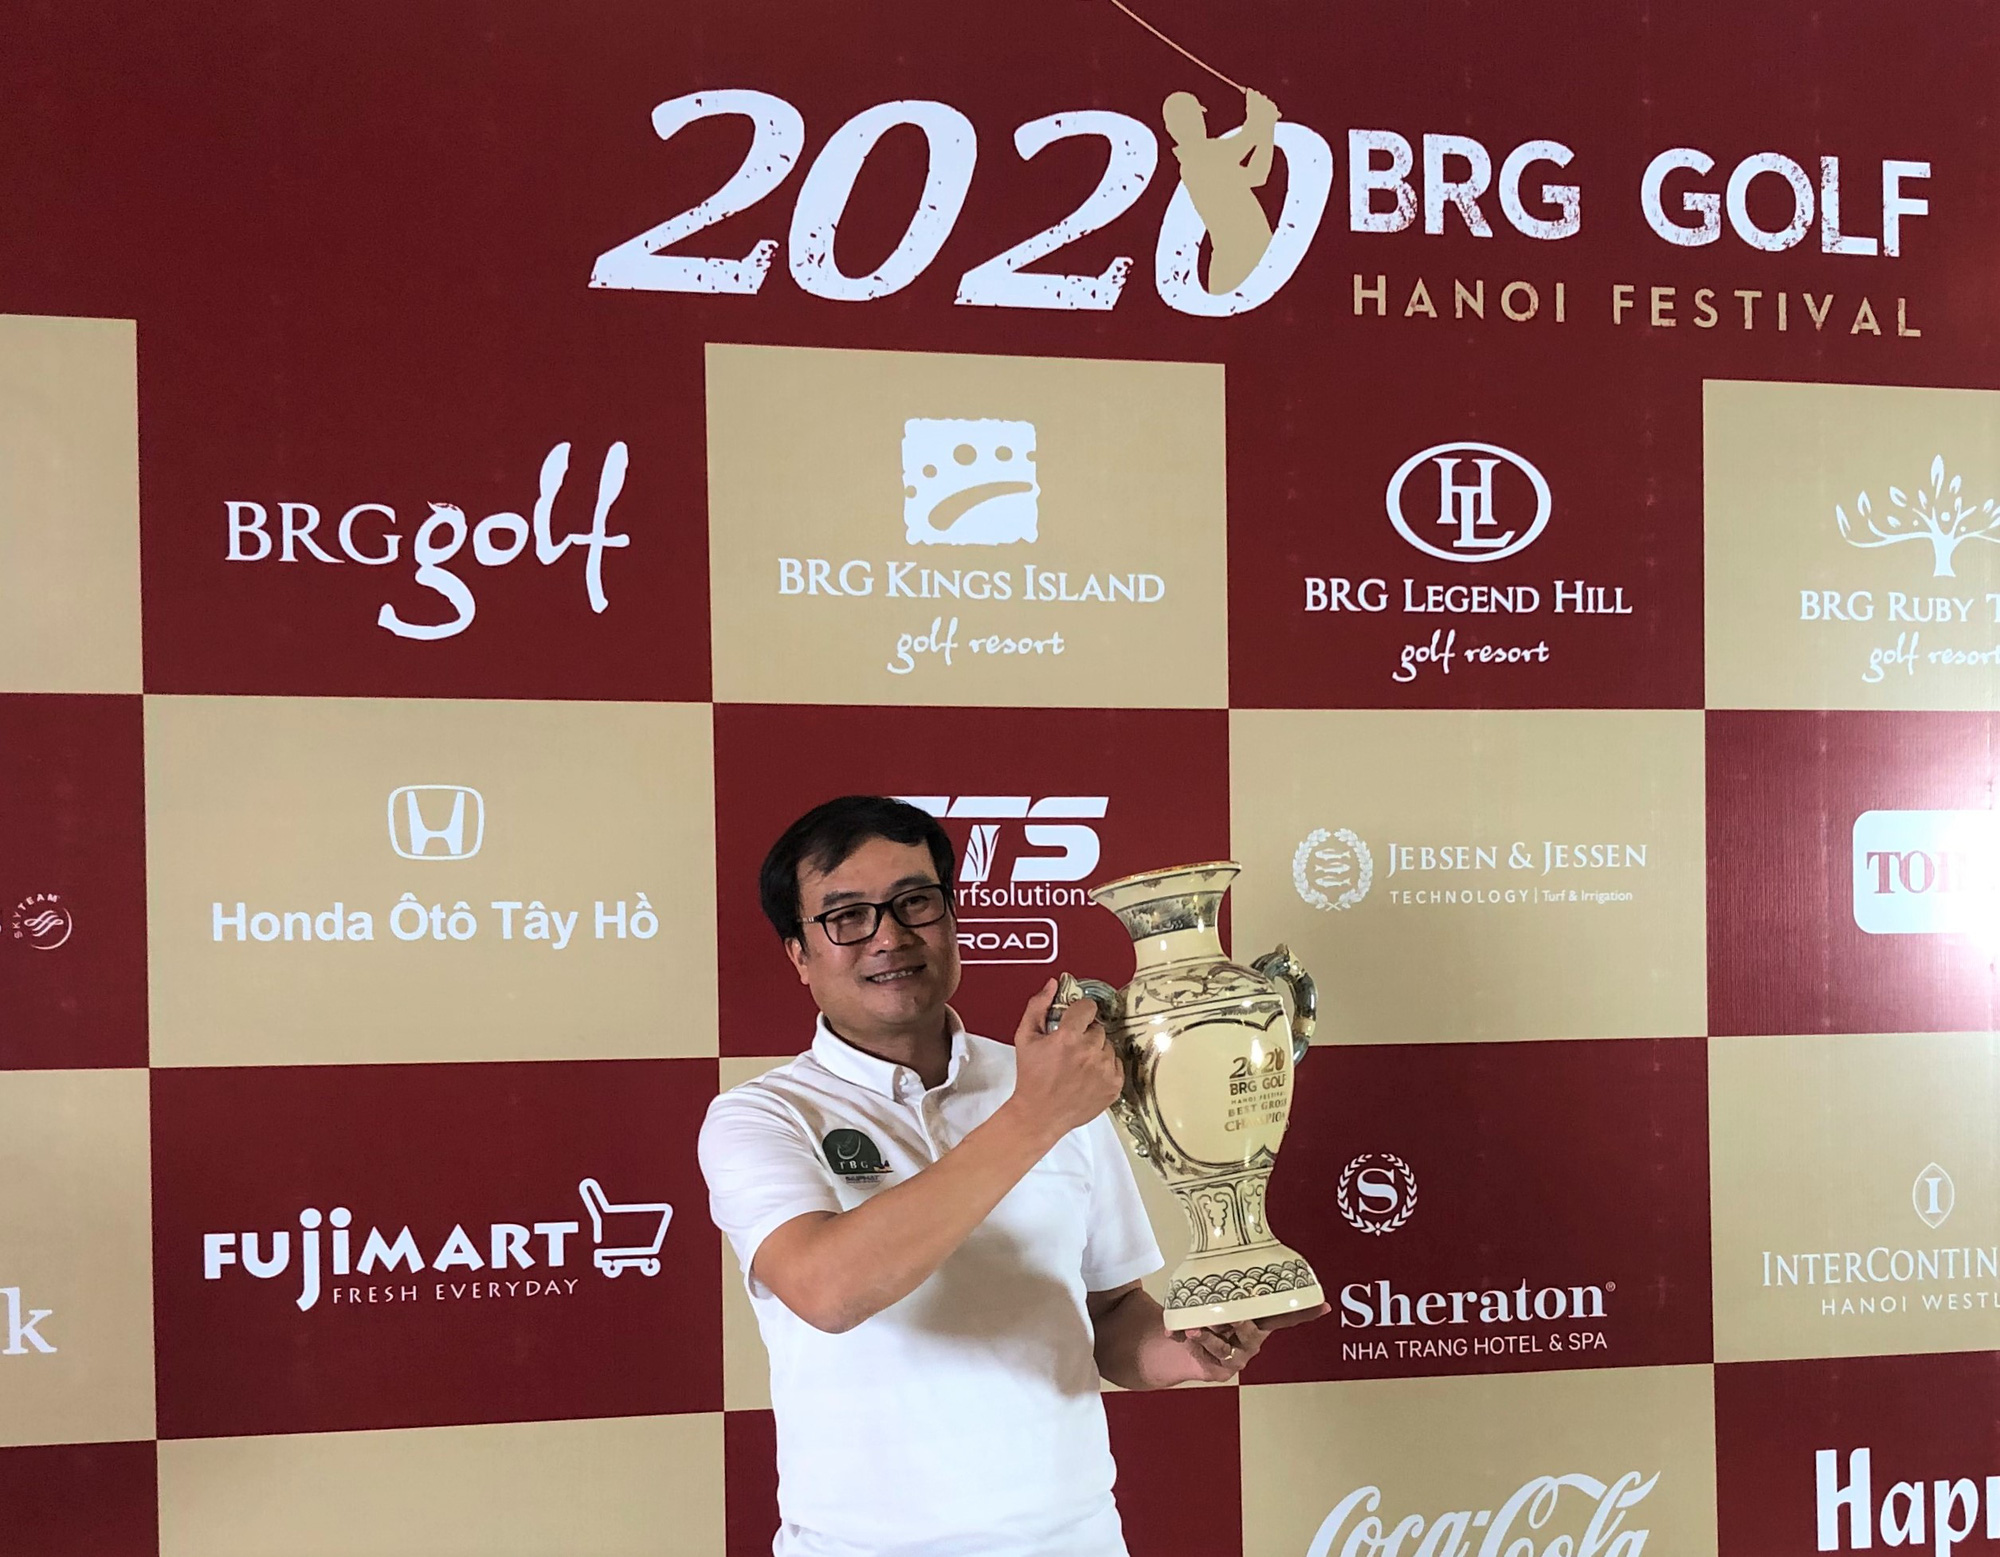 Giải BRG Golf Hanoi Festival 2020 với tình yêu thể thao  - Ảnh 2.